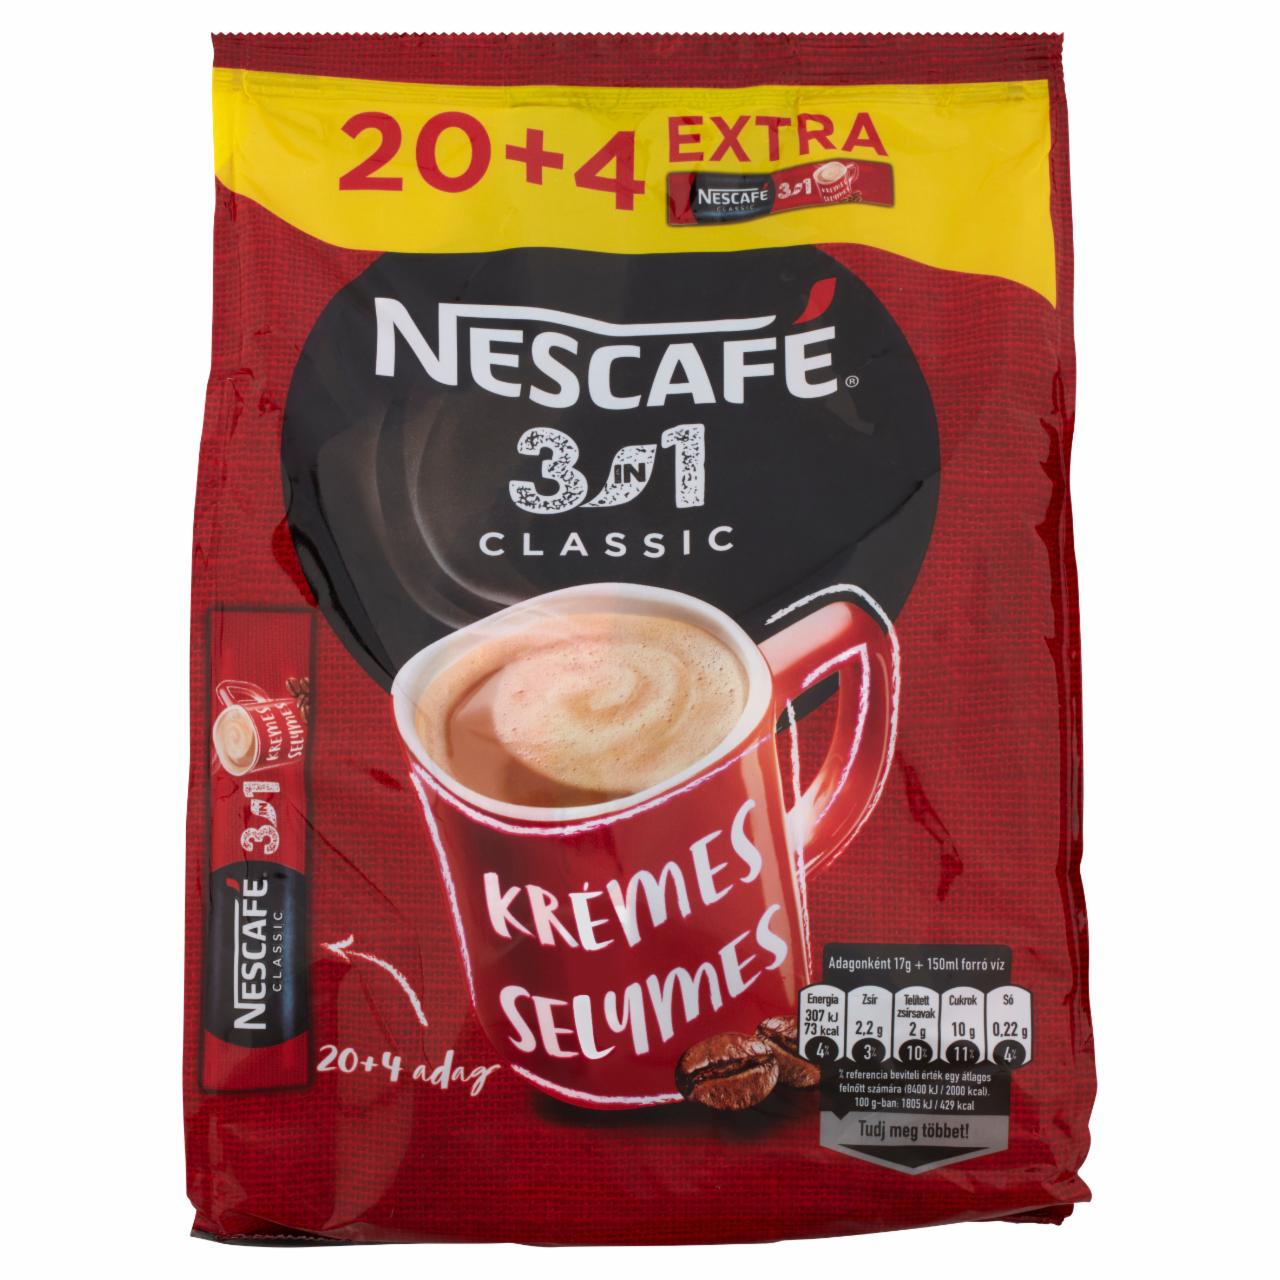 Képek - Nescafé 3in1 Classic azonnal oldódó kávéspecialitás 24 x 17 g (408 g)